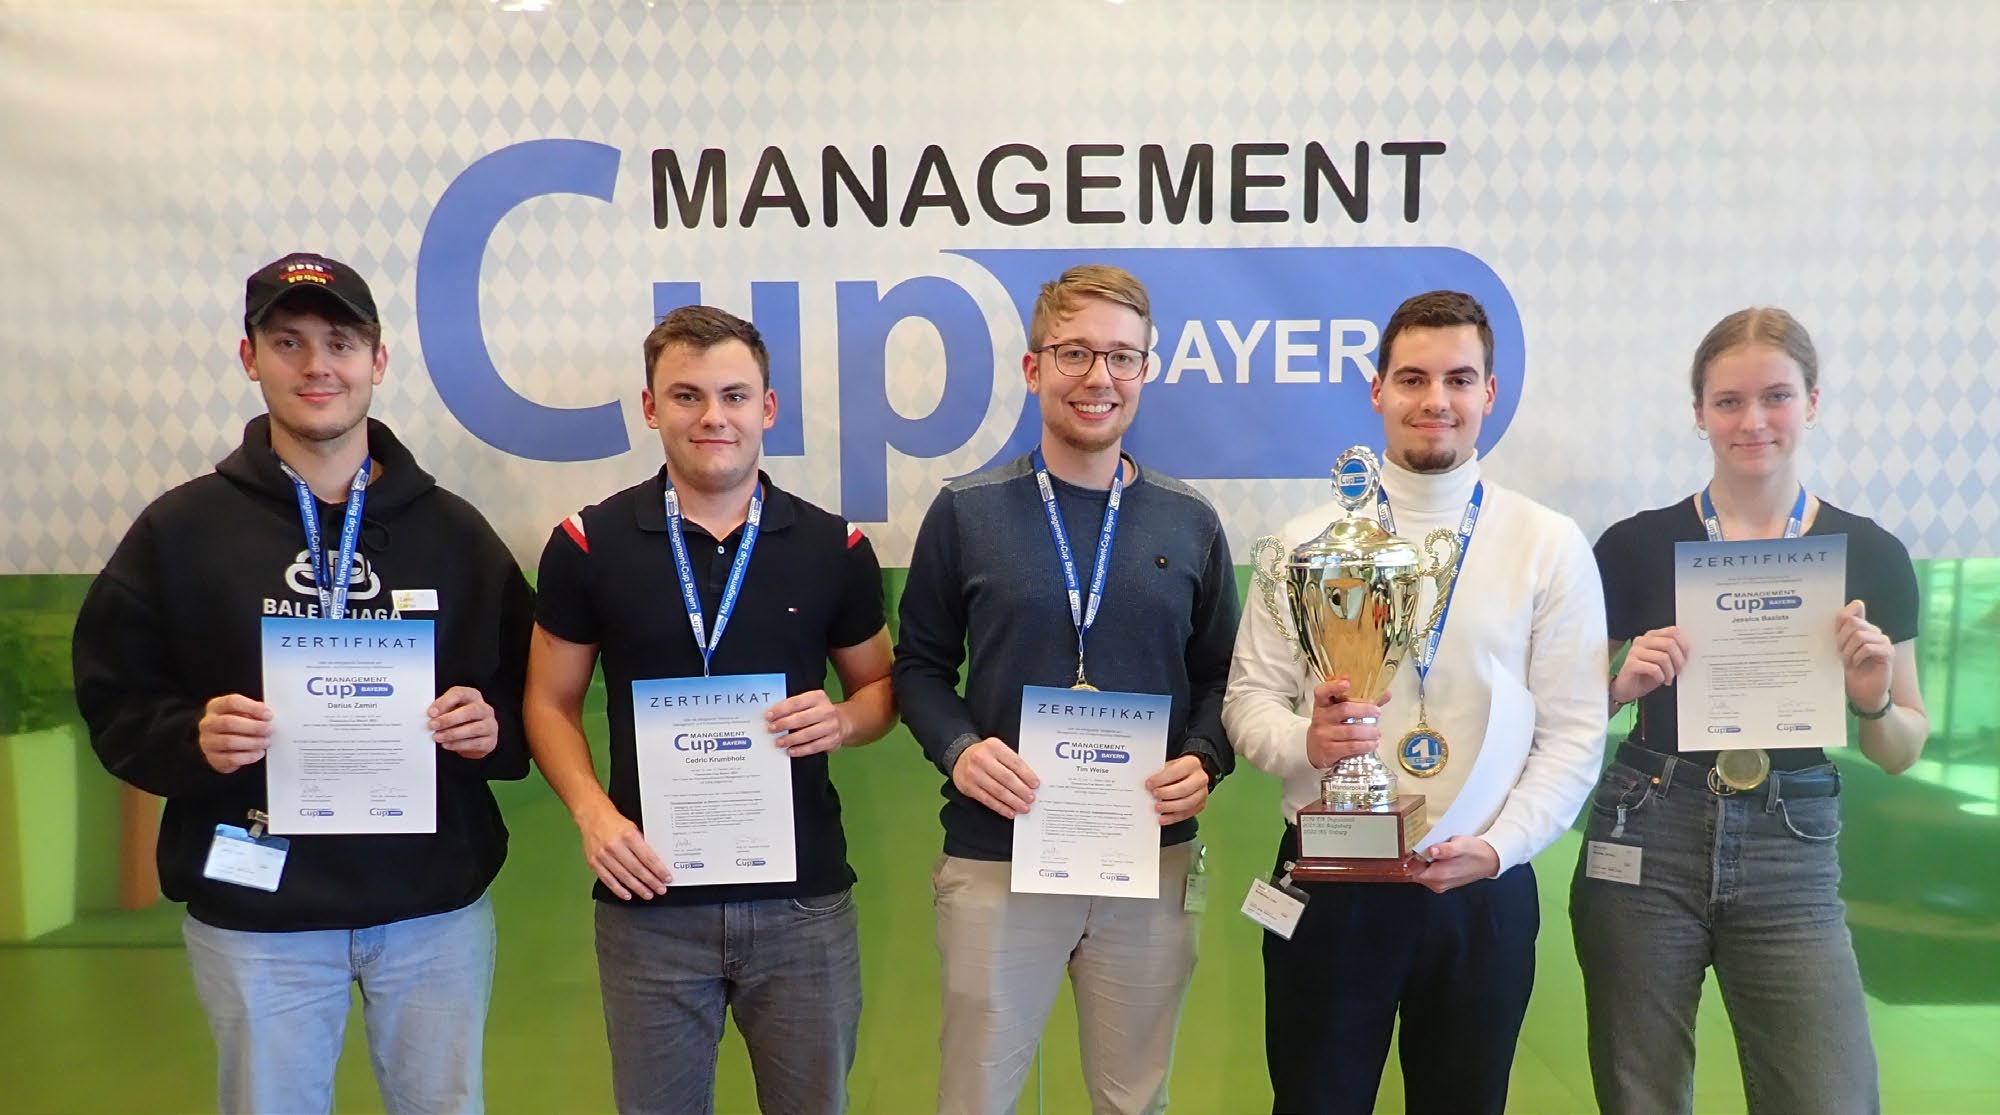 Management Cup